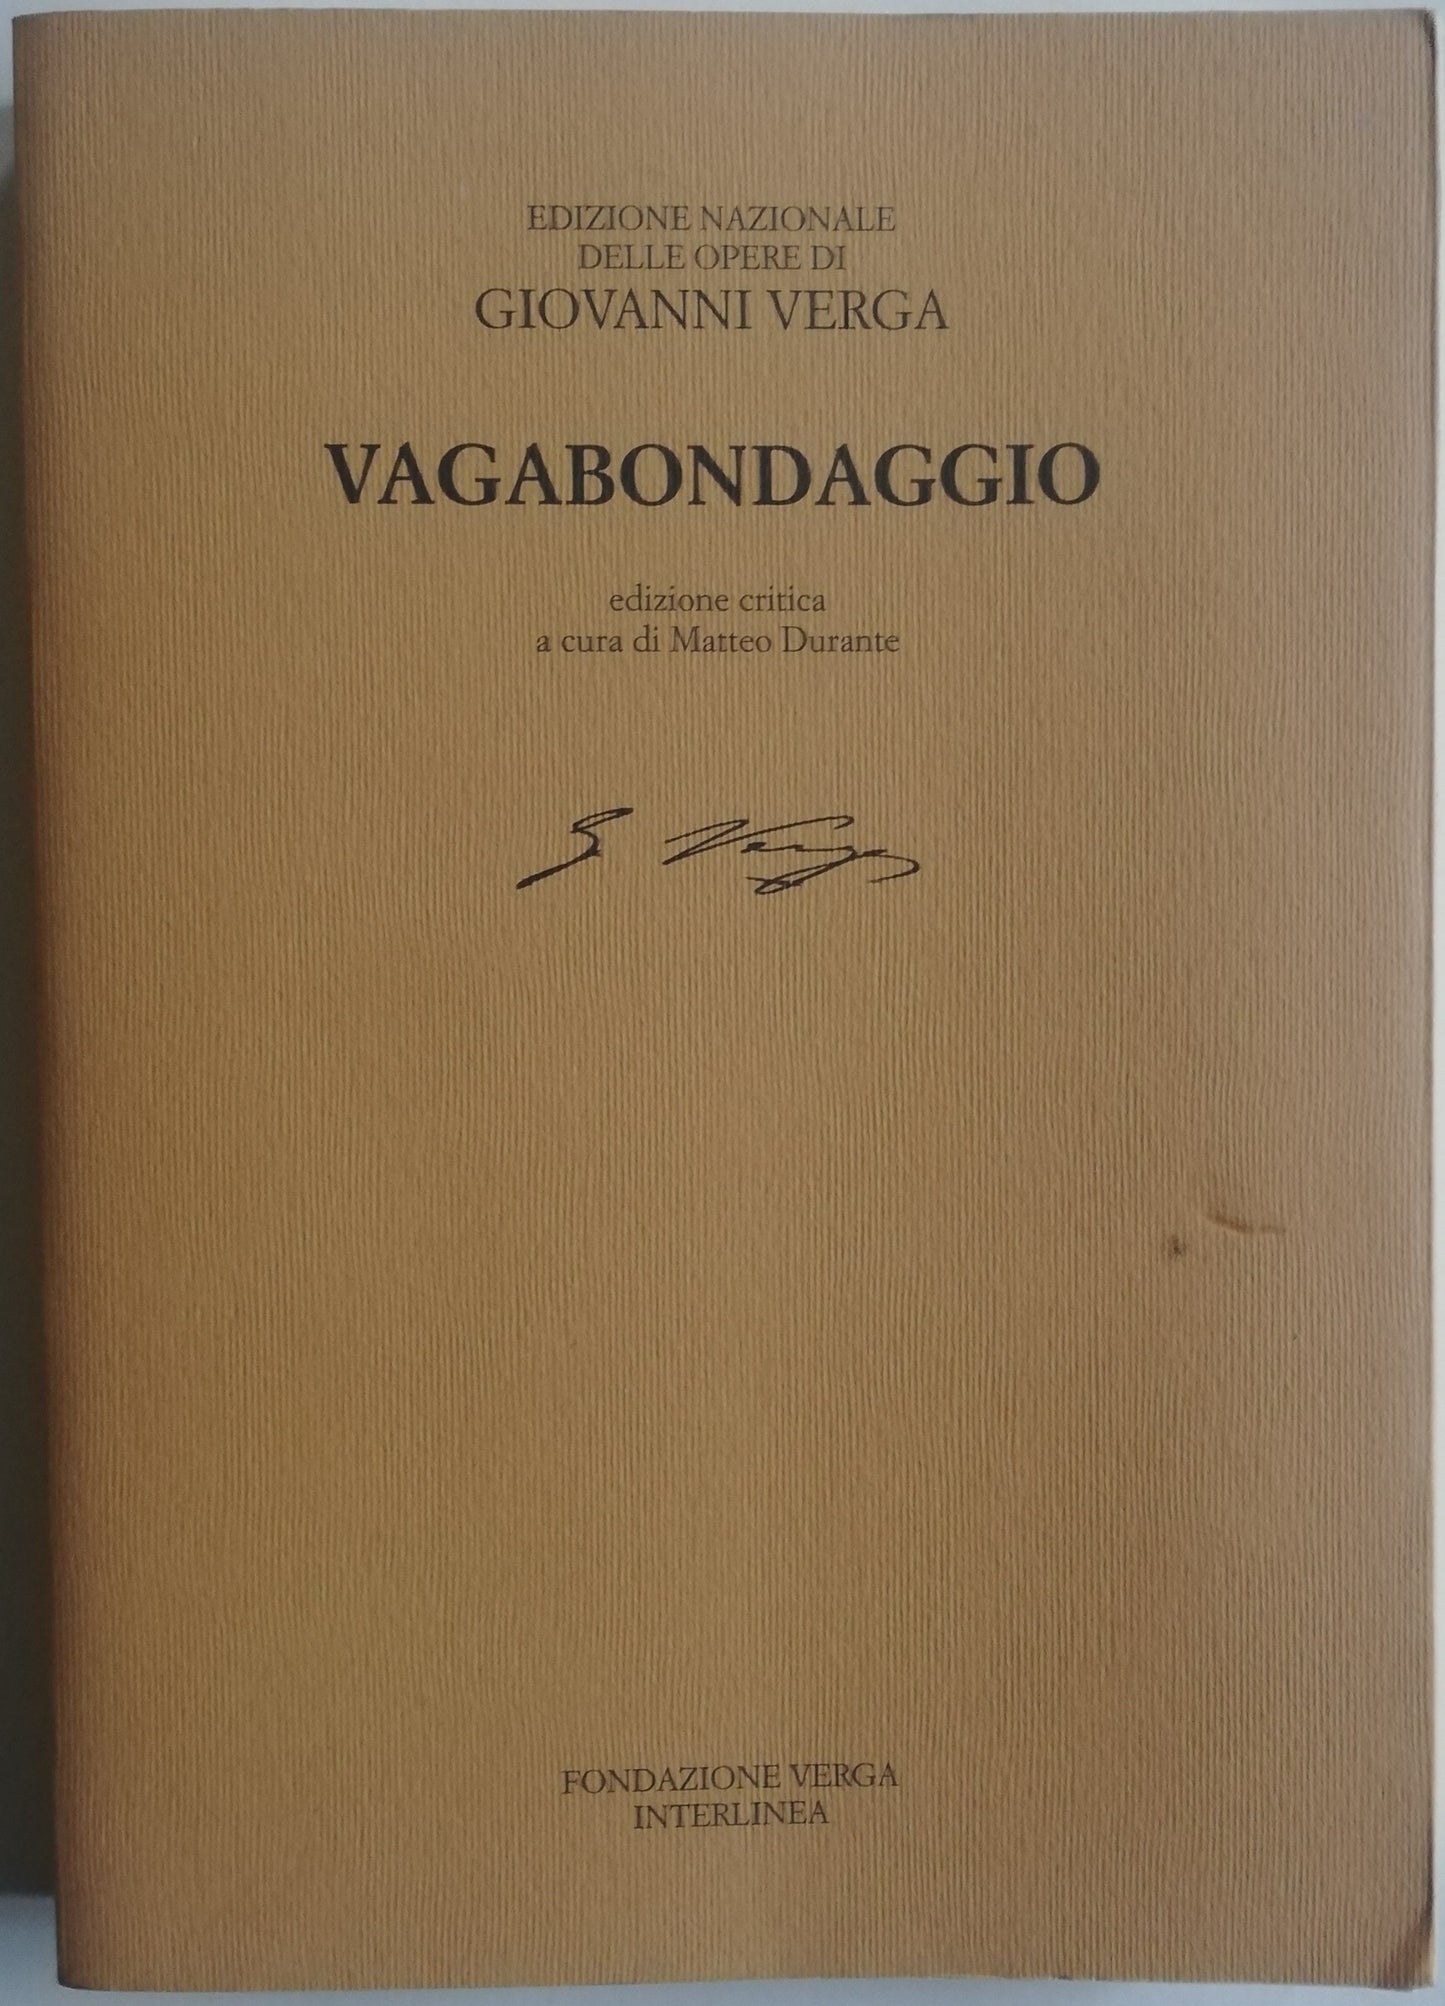 Vagabondaggio - Edizione Nazionale delle opere di Giovanni Verga